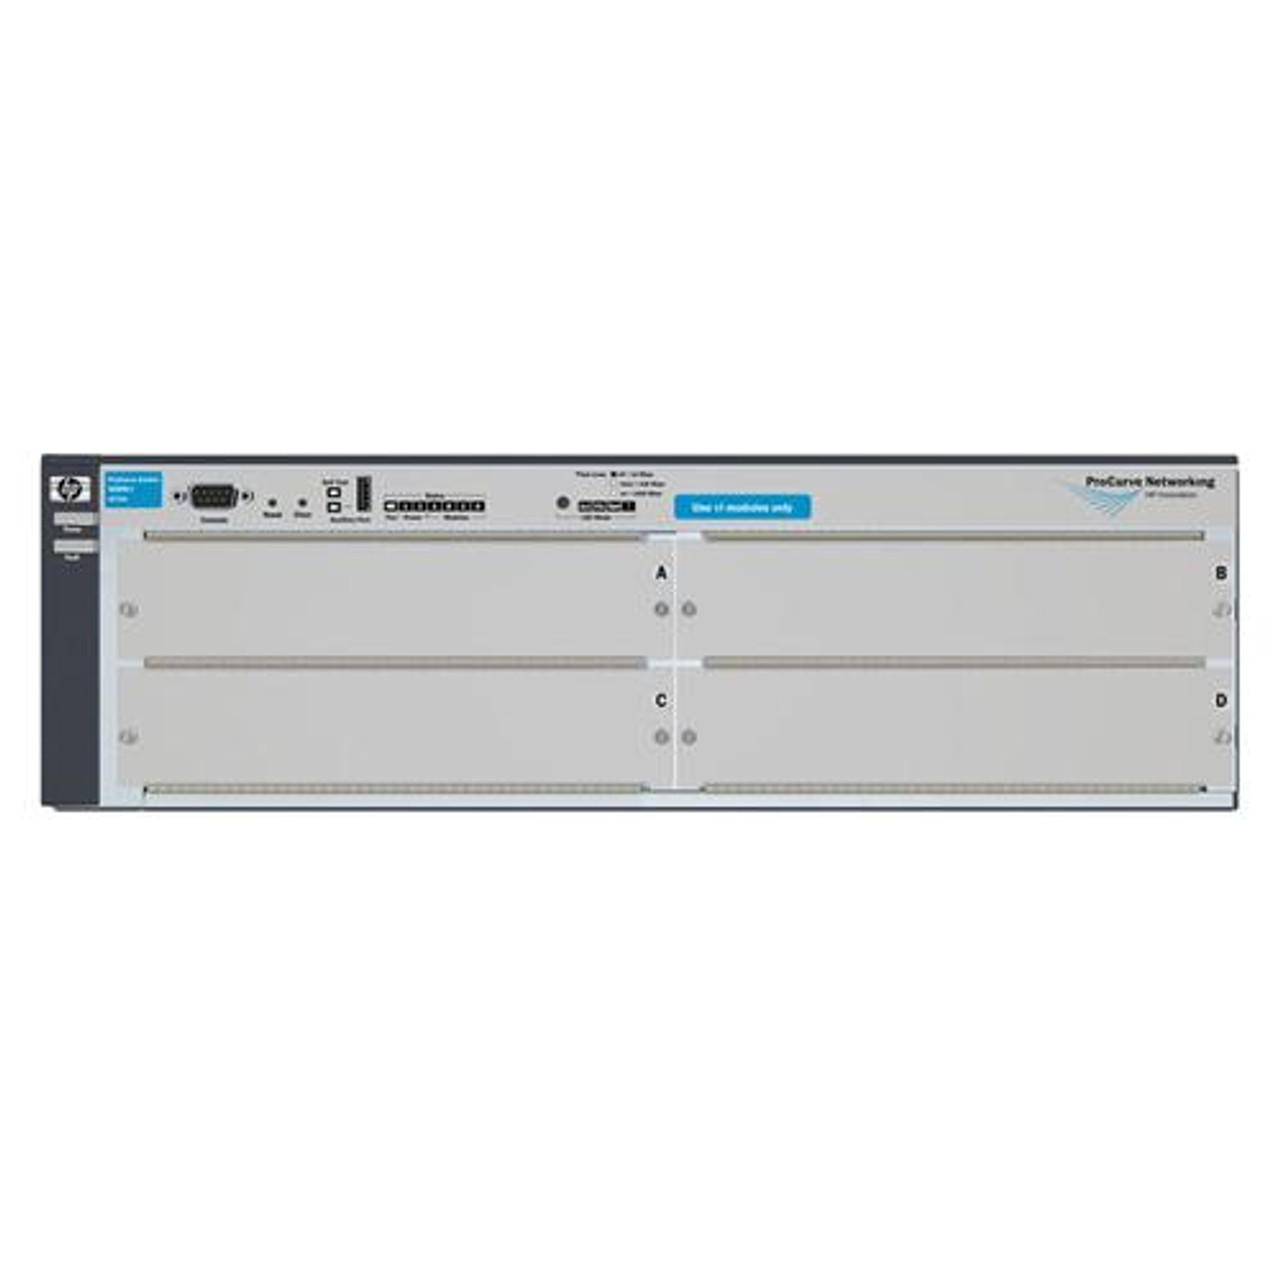 J8770AB HP ProCurve E4204vl Stackable Managed 48-Ports SFP Gigabit Ethernet Switch 3U Rack-mountable (Refurbished)